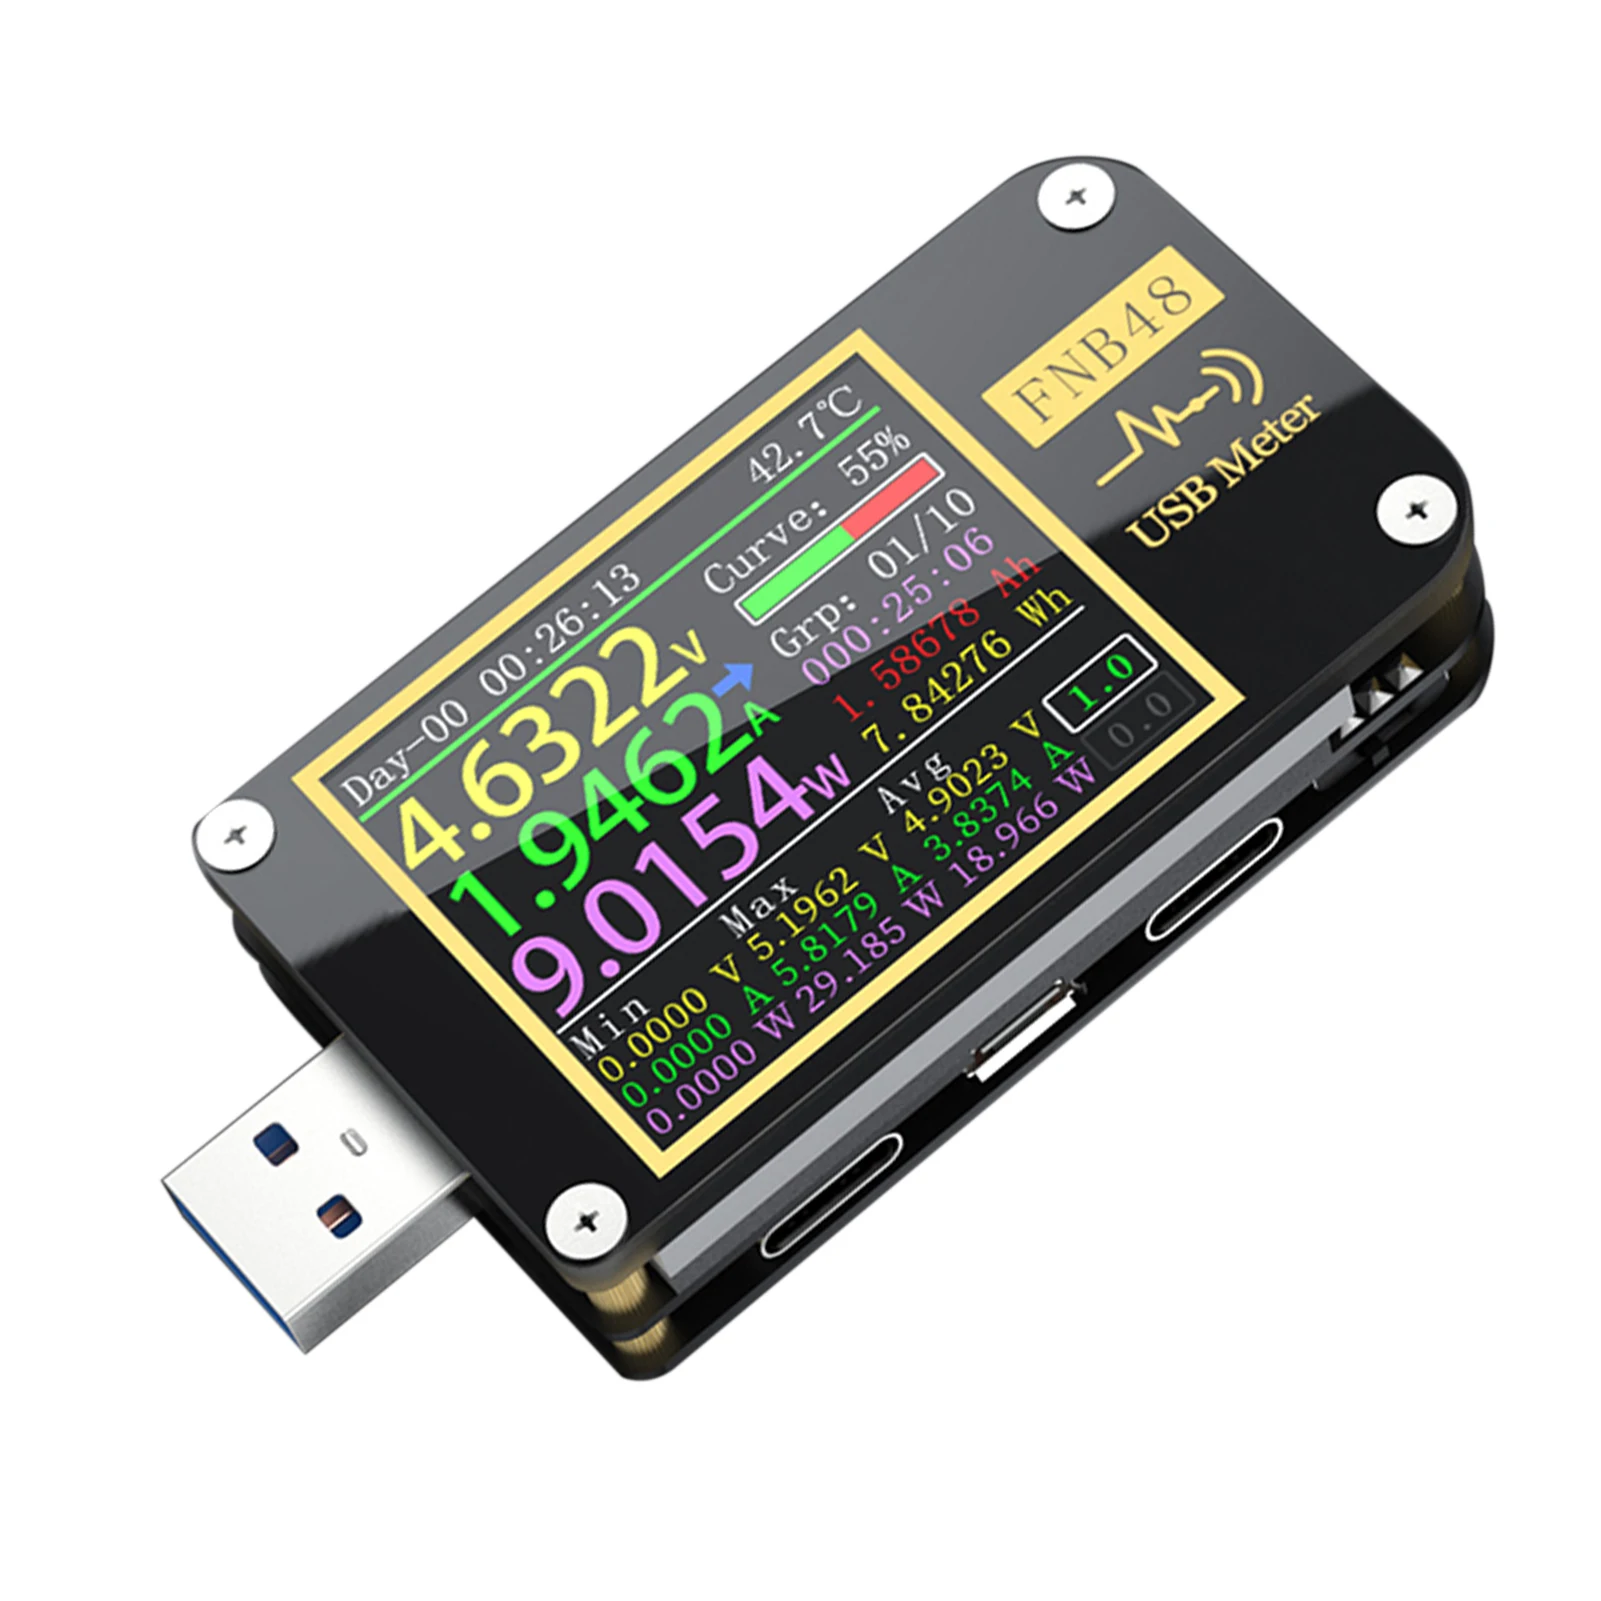 FNB48 Digital Voltmeter Ammeter Greito Įkrovimo Nešiojamas USB Testeris Talpa Matuoklis LCD Ekranas Detektorius Mobiliojo Telefono Tipas PD C